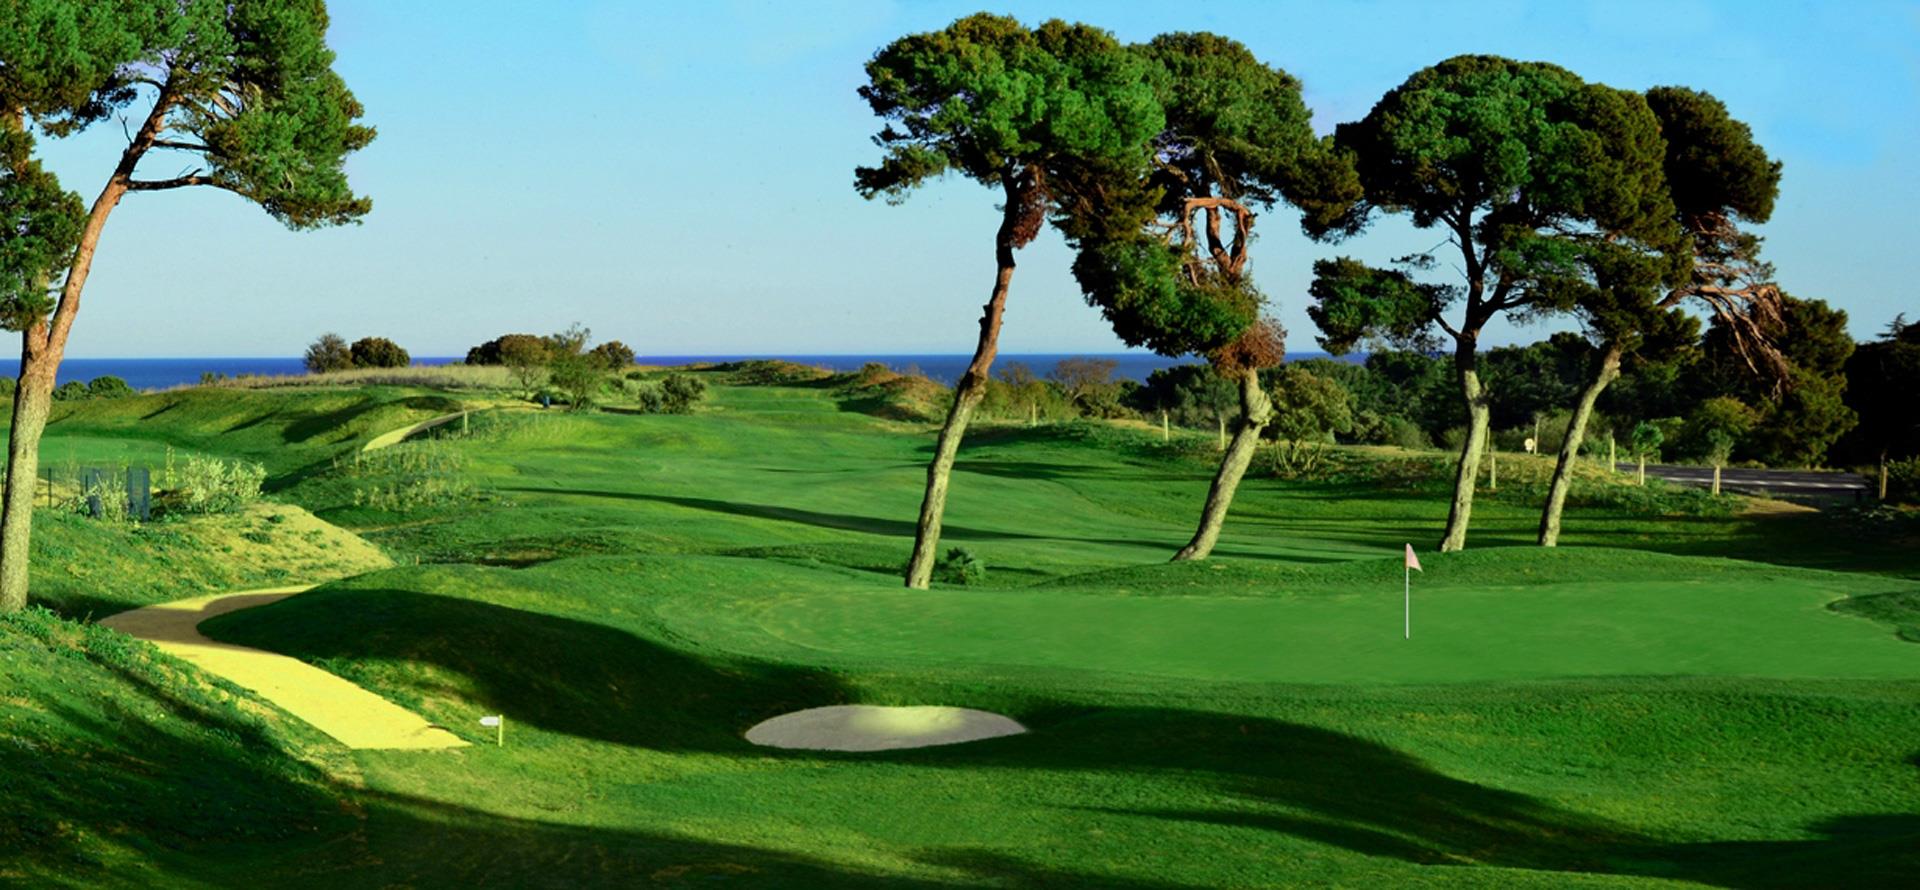 Hotel de 4 estrellas del golf de Cap d’Agde en Occitania